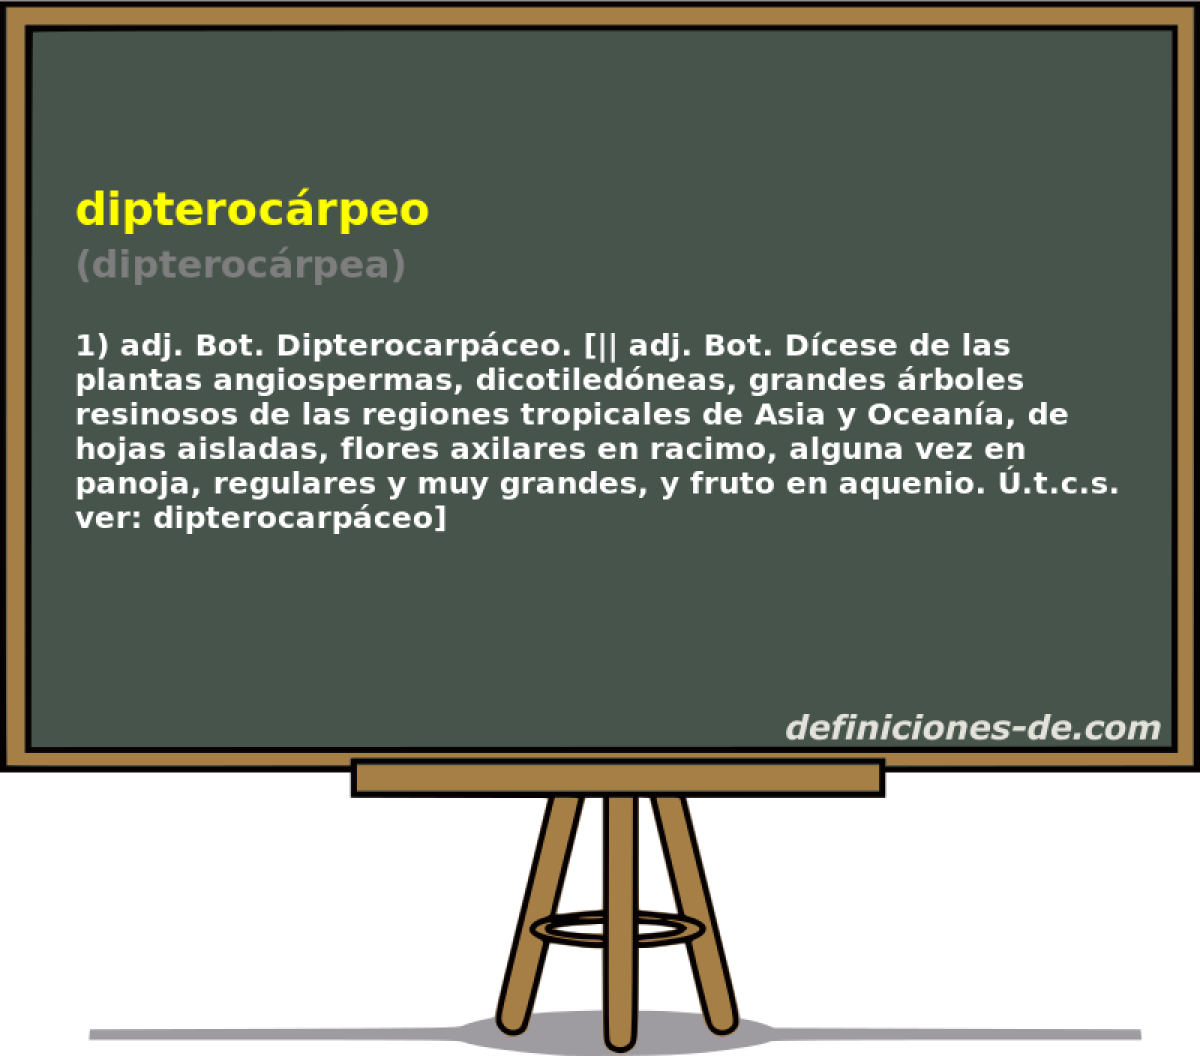 dipterocrpeo (dipterocrpea)